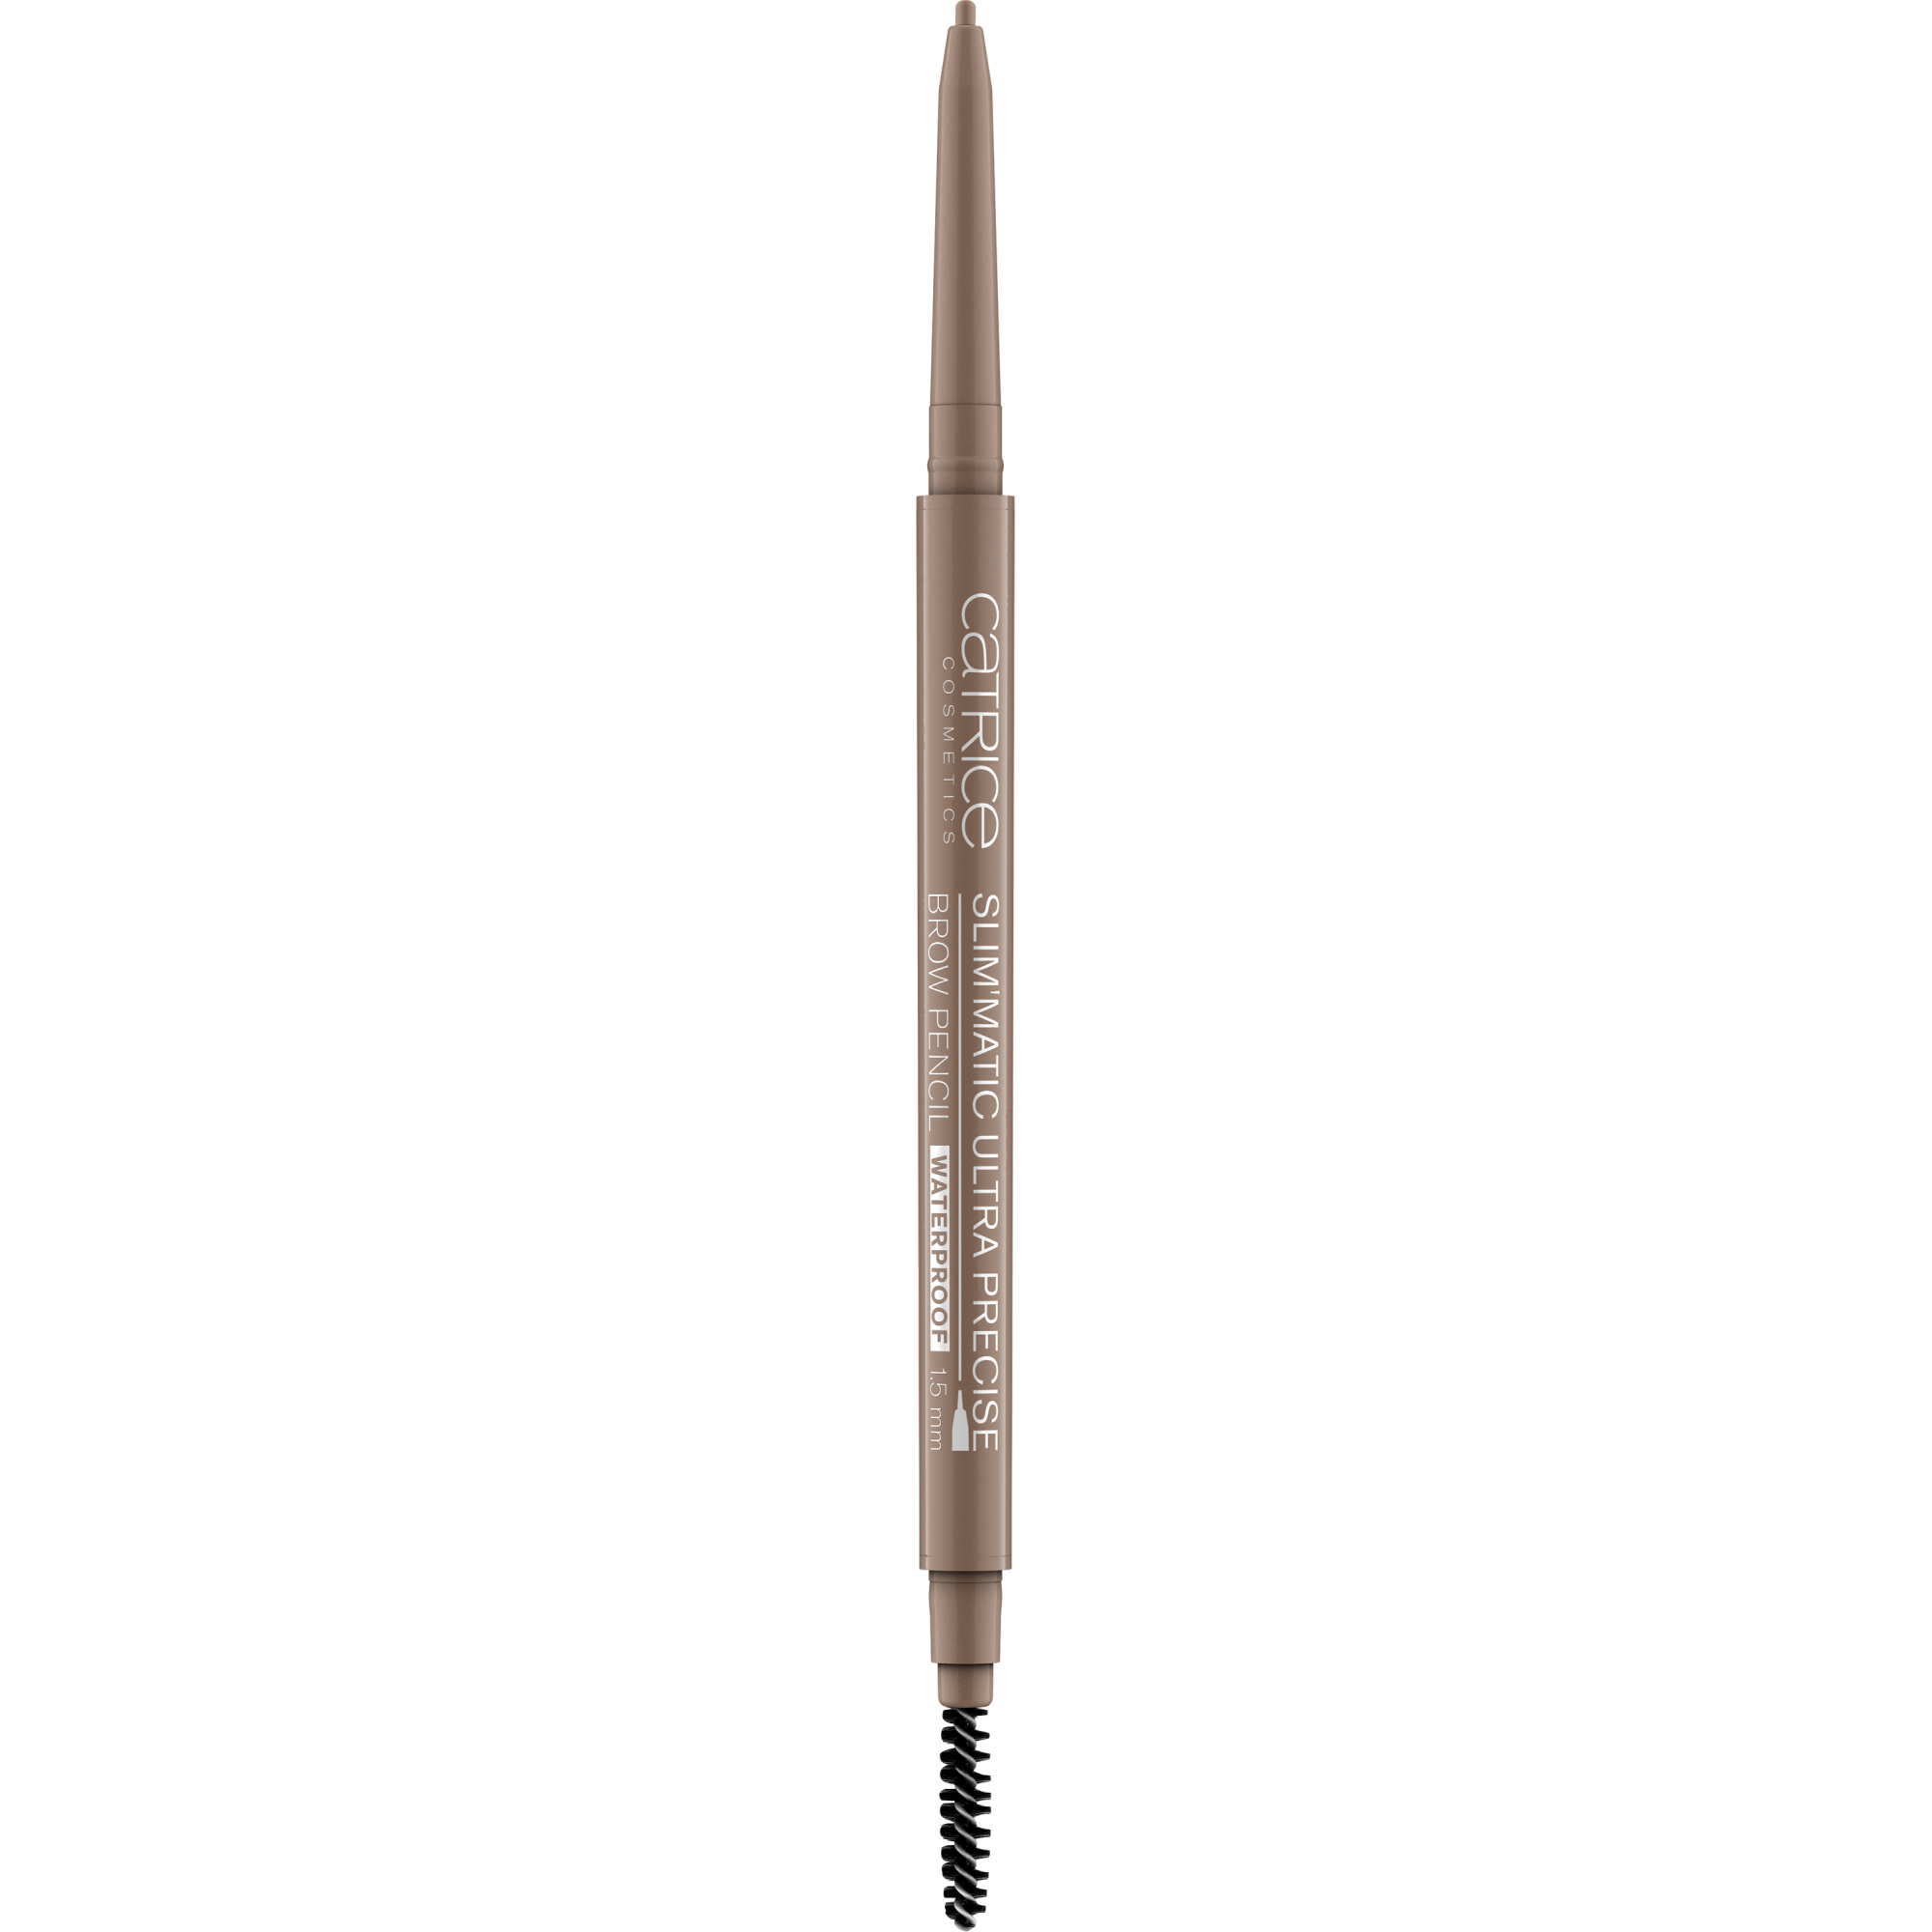 Ультраточный водостойкий карандаш для бровей Slim'Matic